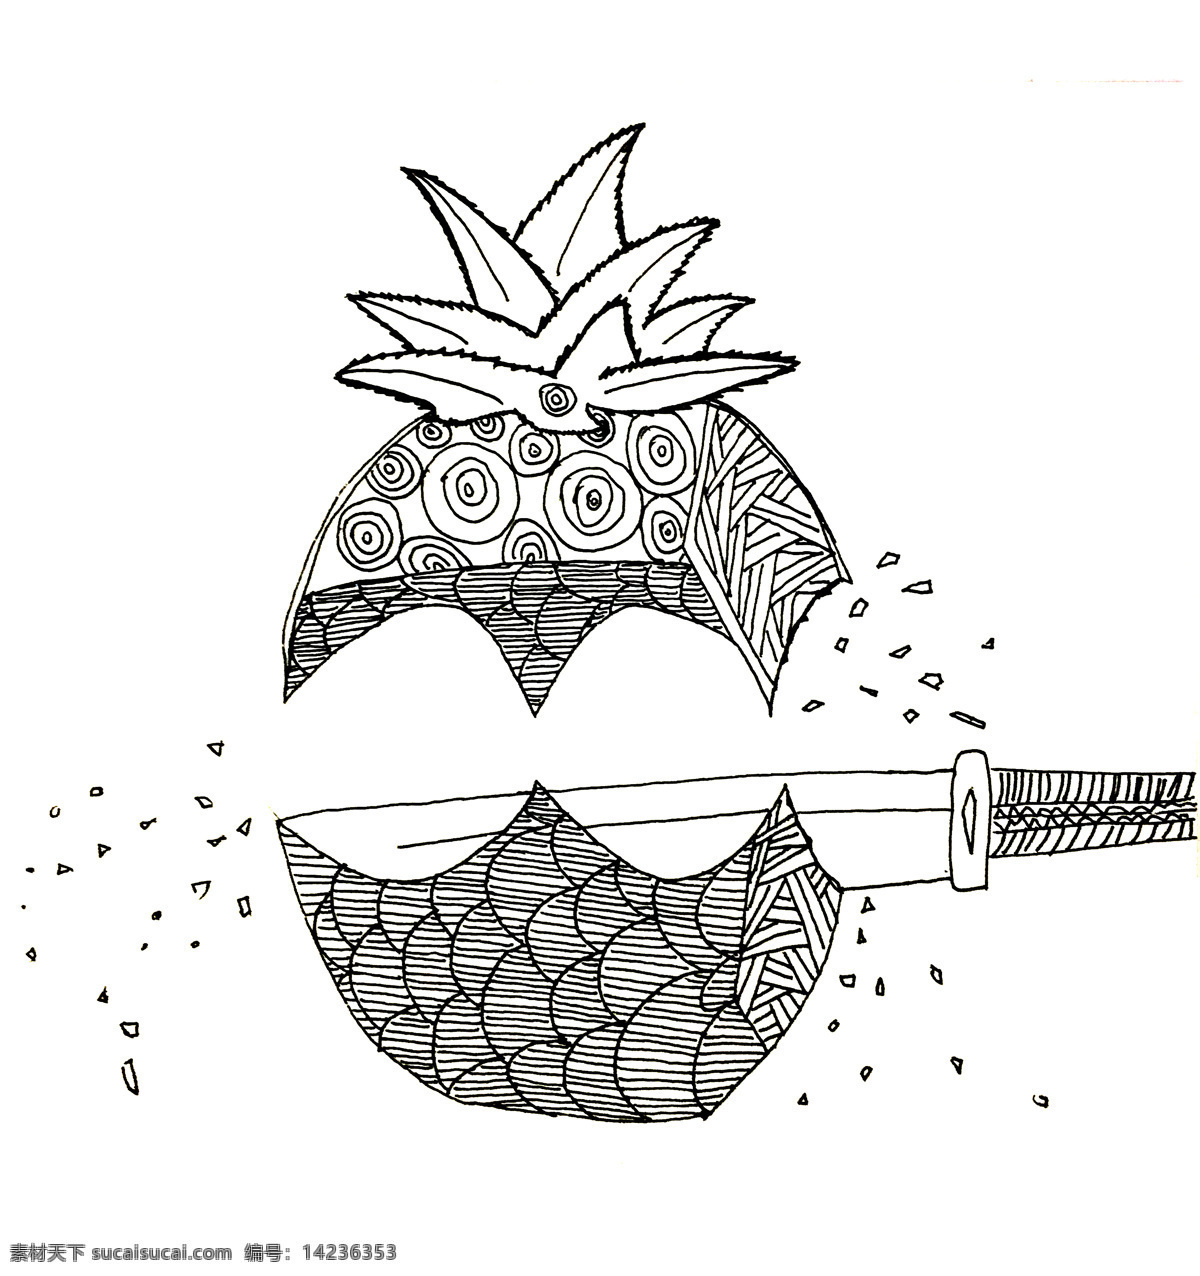 菠萝创意元素 菠萝 创意 元素 线条 装饰 碎 圈 点